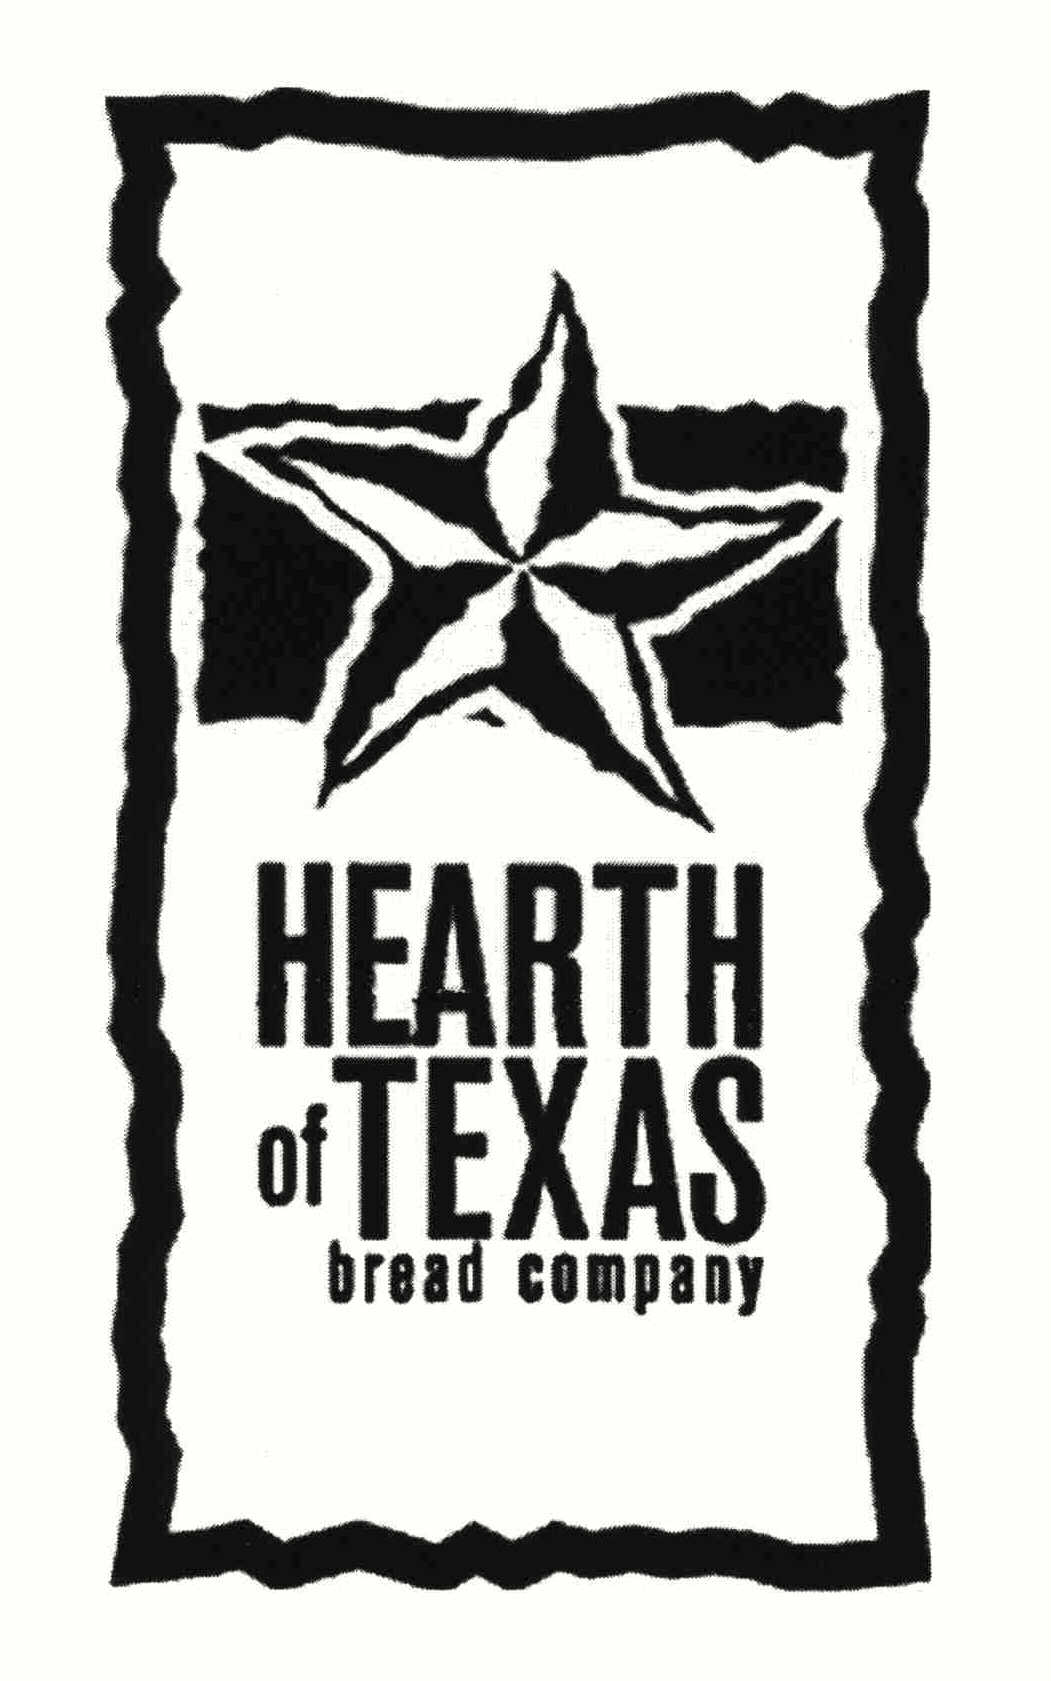  HEARTH OF TEXAS BREAD COMPANY